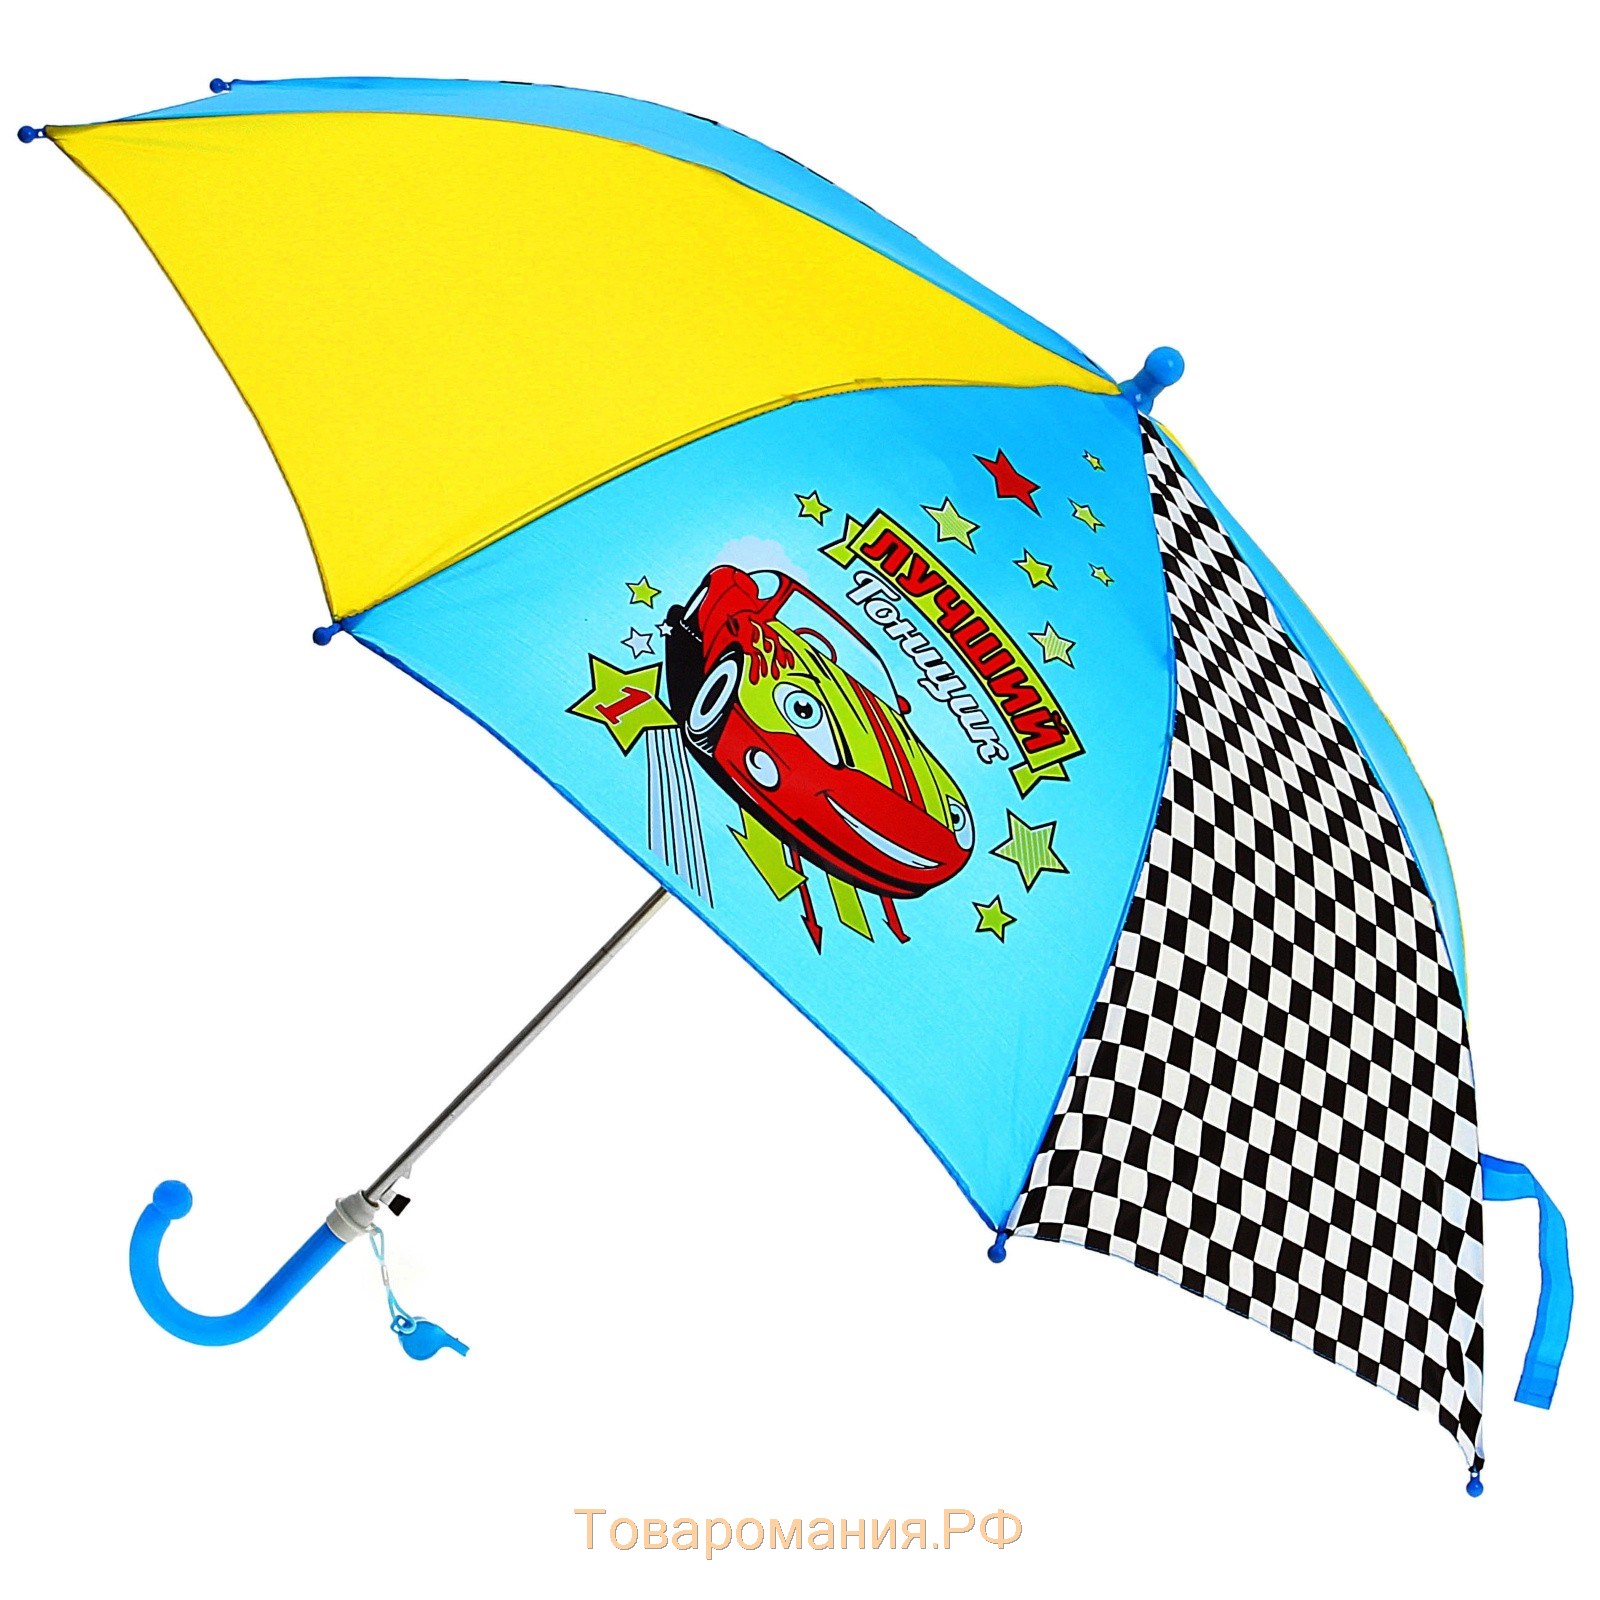 Зонт детский п/авт R-43,5 см 8 спиц П/Э "Лучший гонщик", со свистком